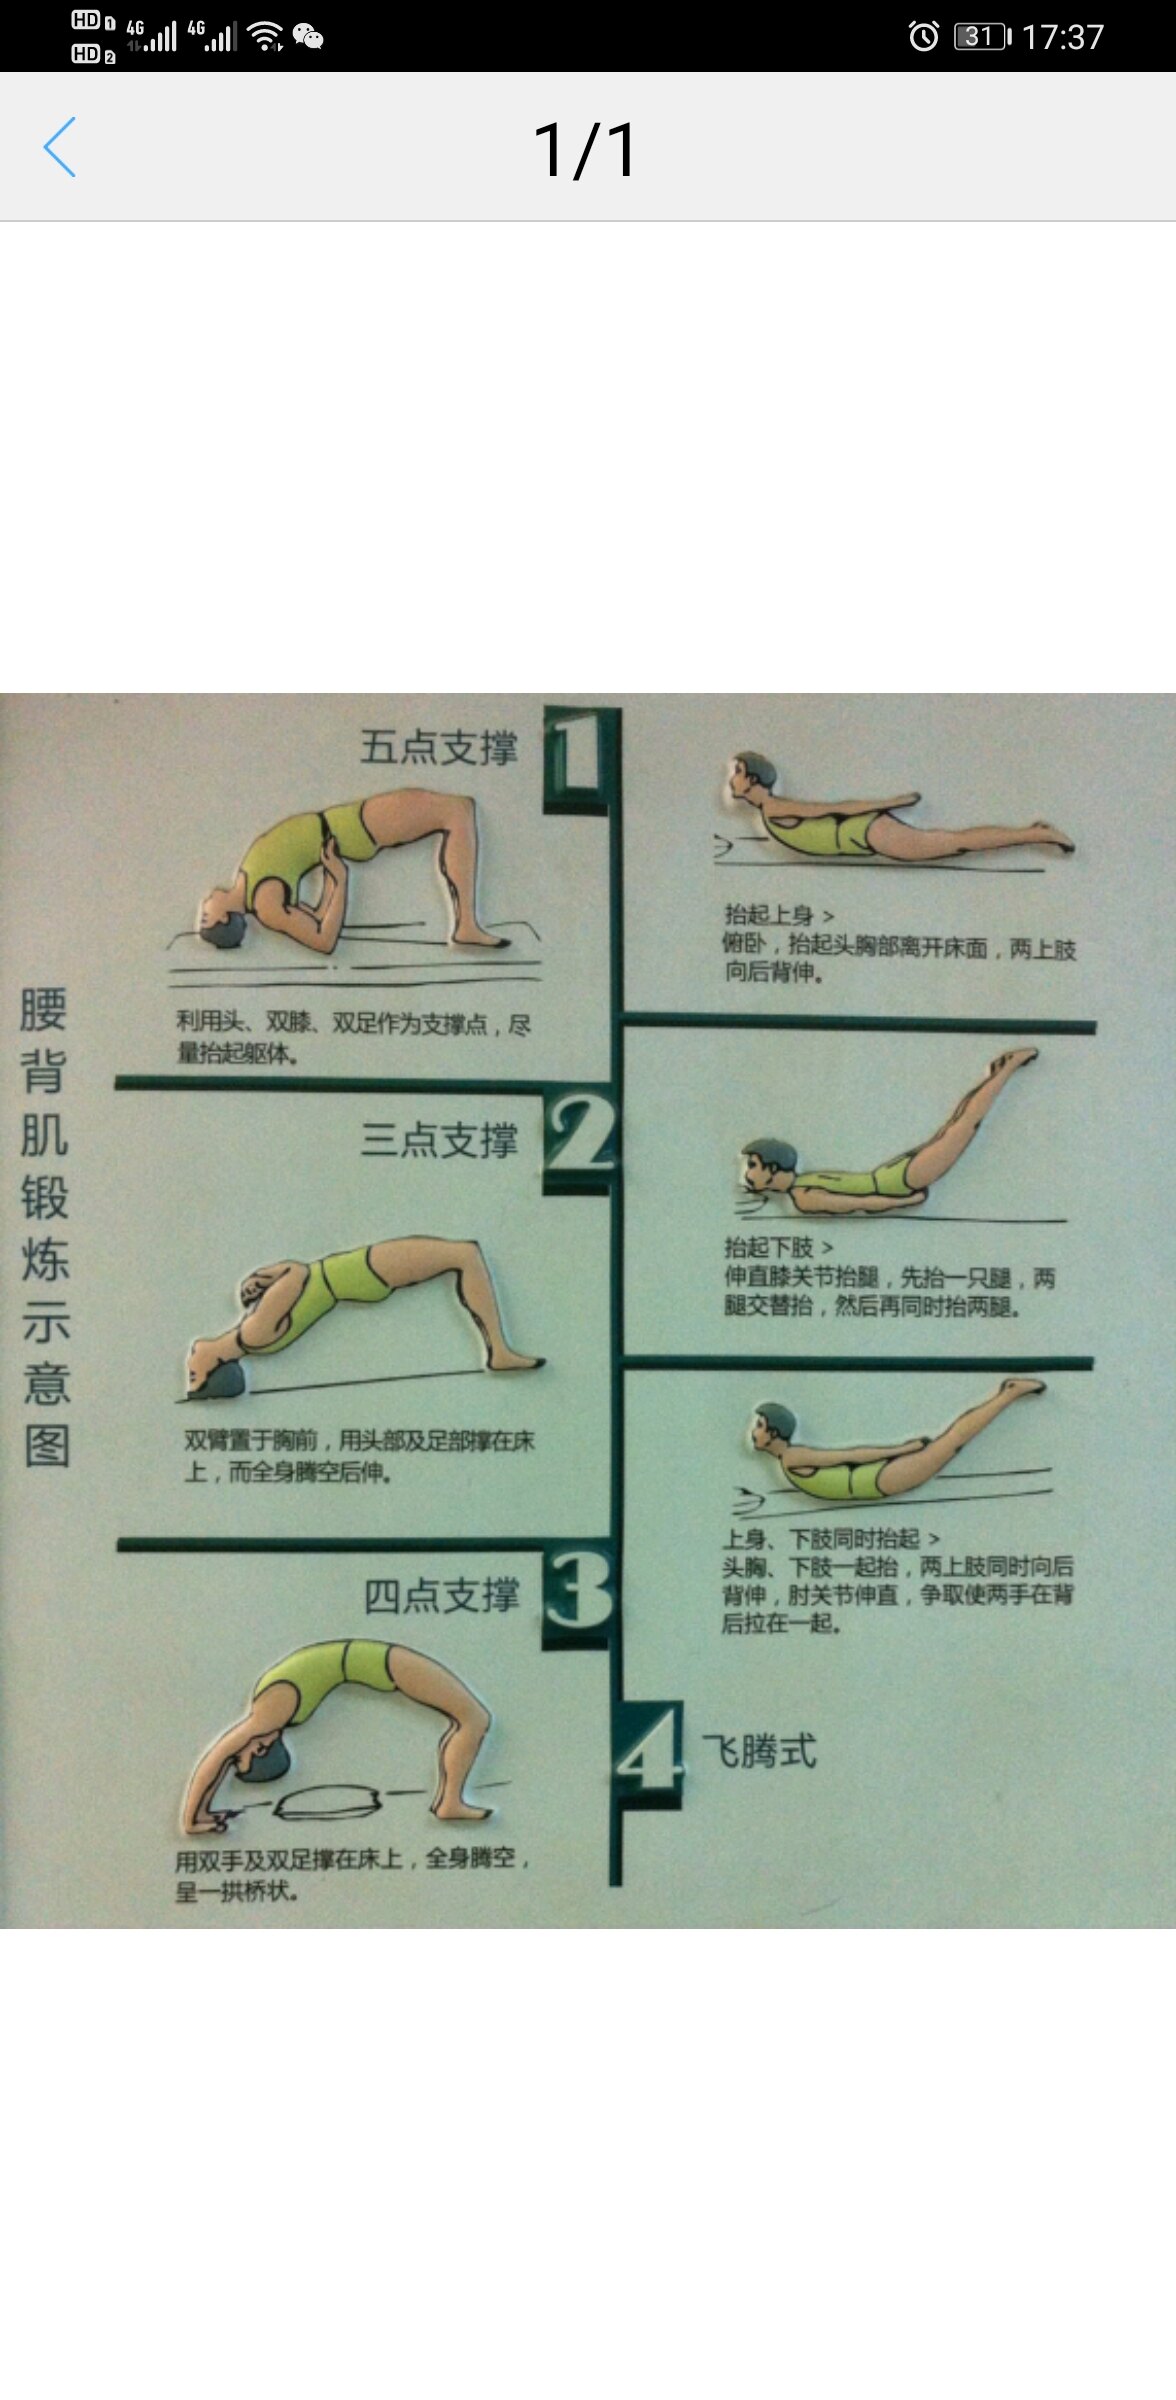 腰背肌肉锻炼示意图